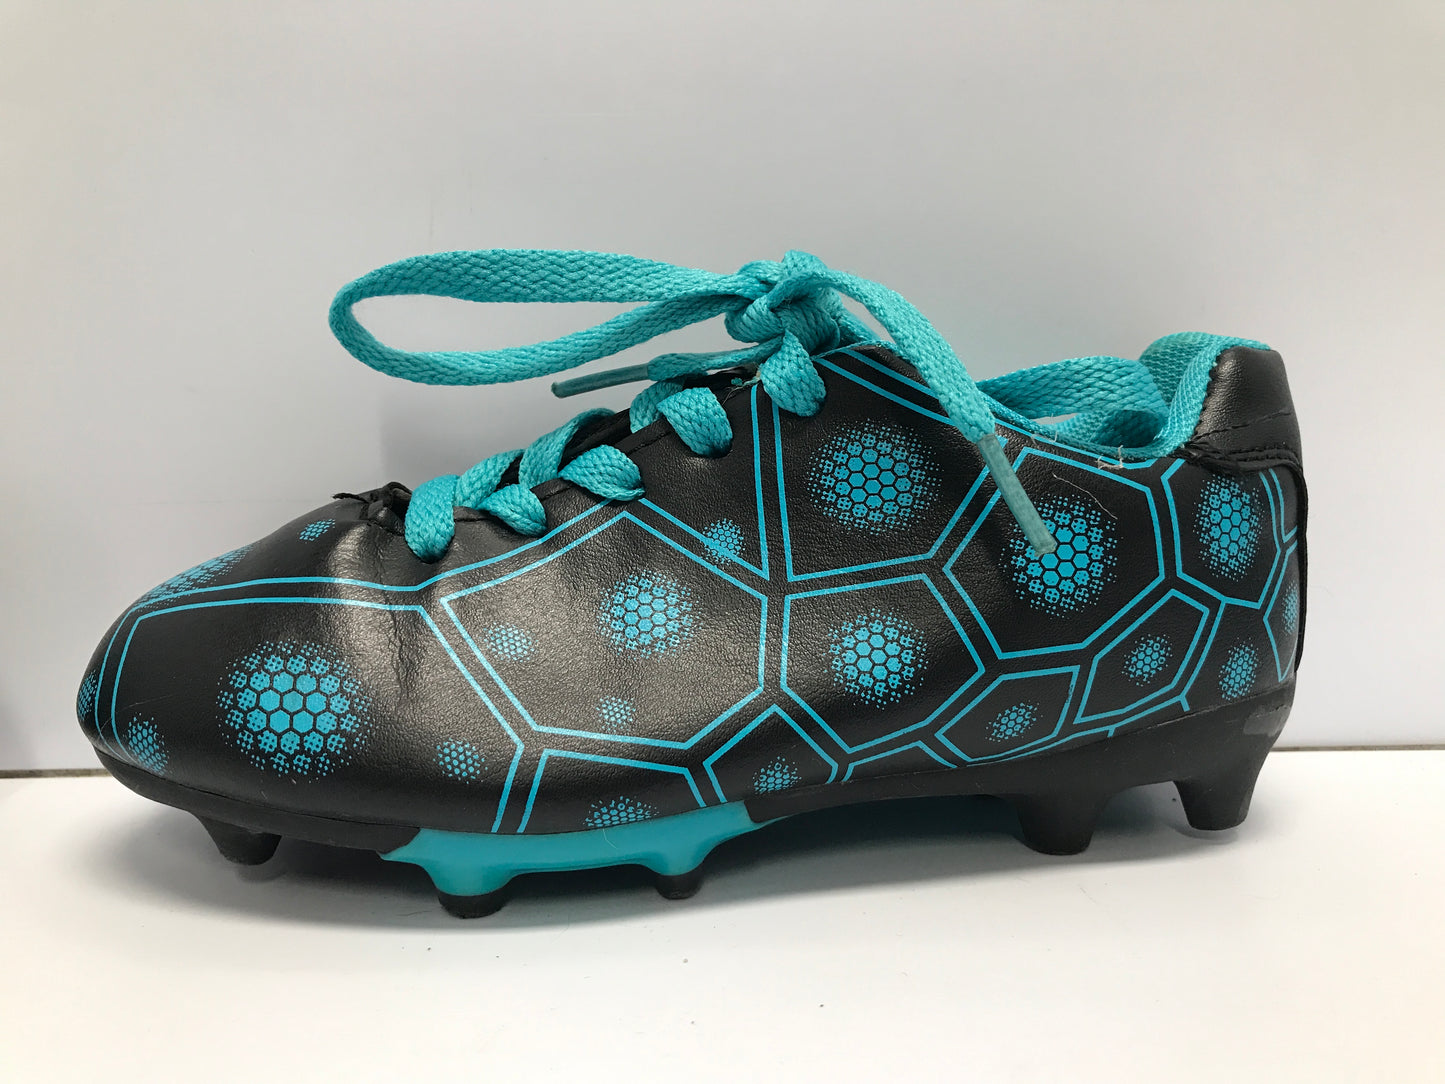 Soccer Shoes Cleats Child Size 13 Blue Black Excellent